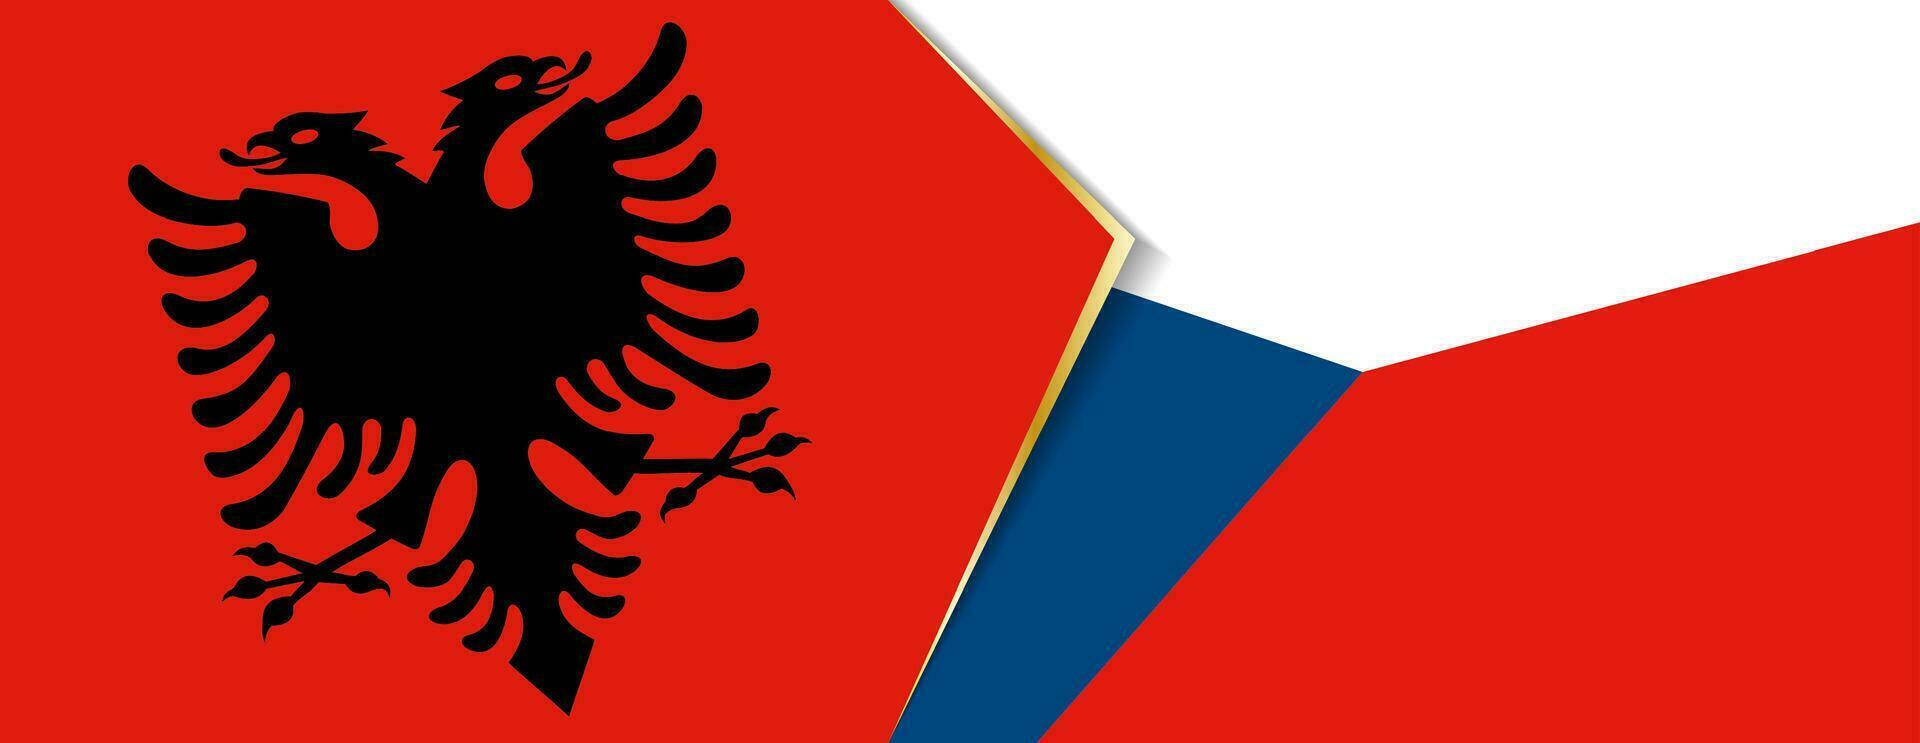 Albania y checo república banderas, dos vector banderas